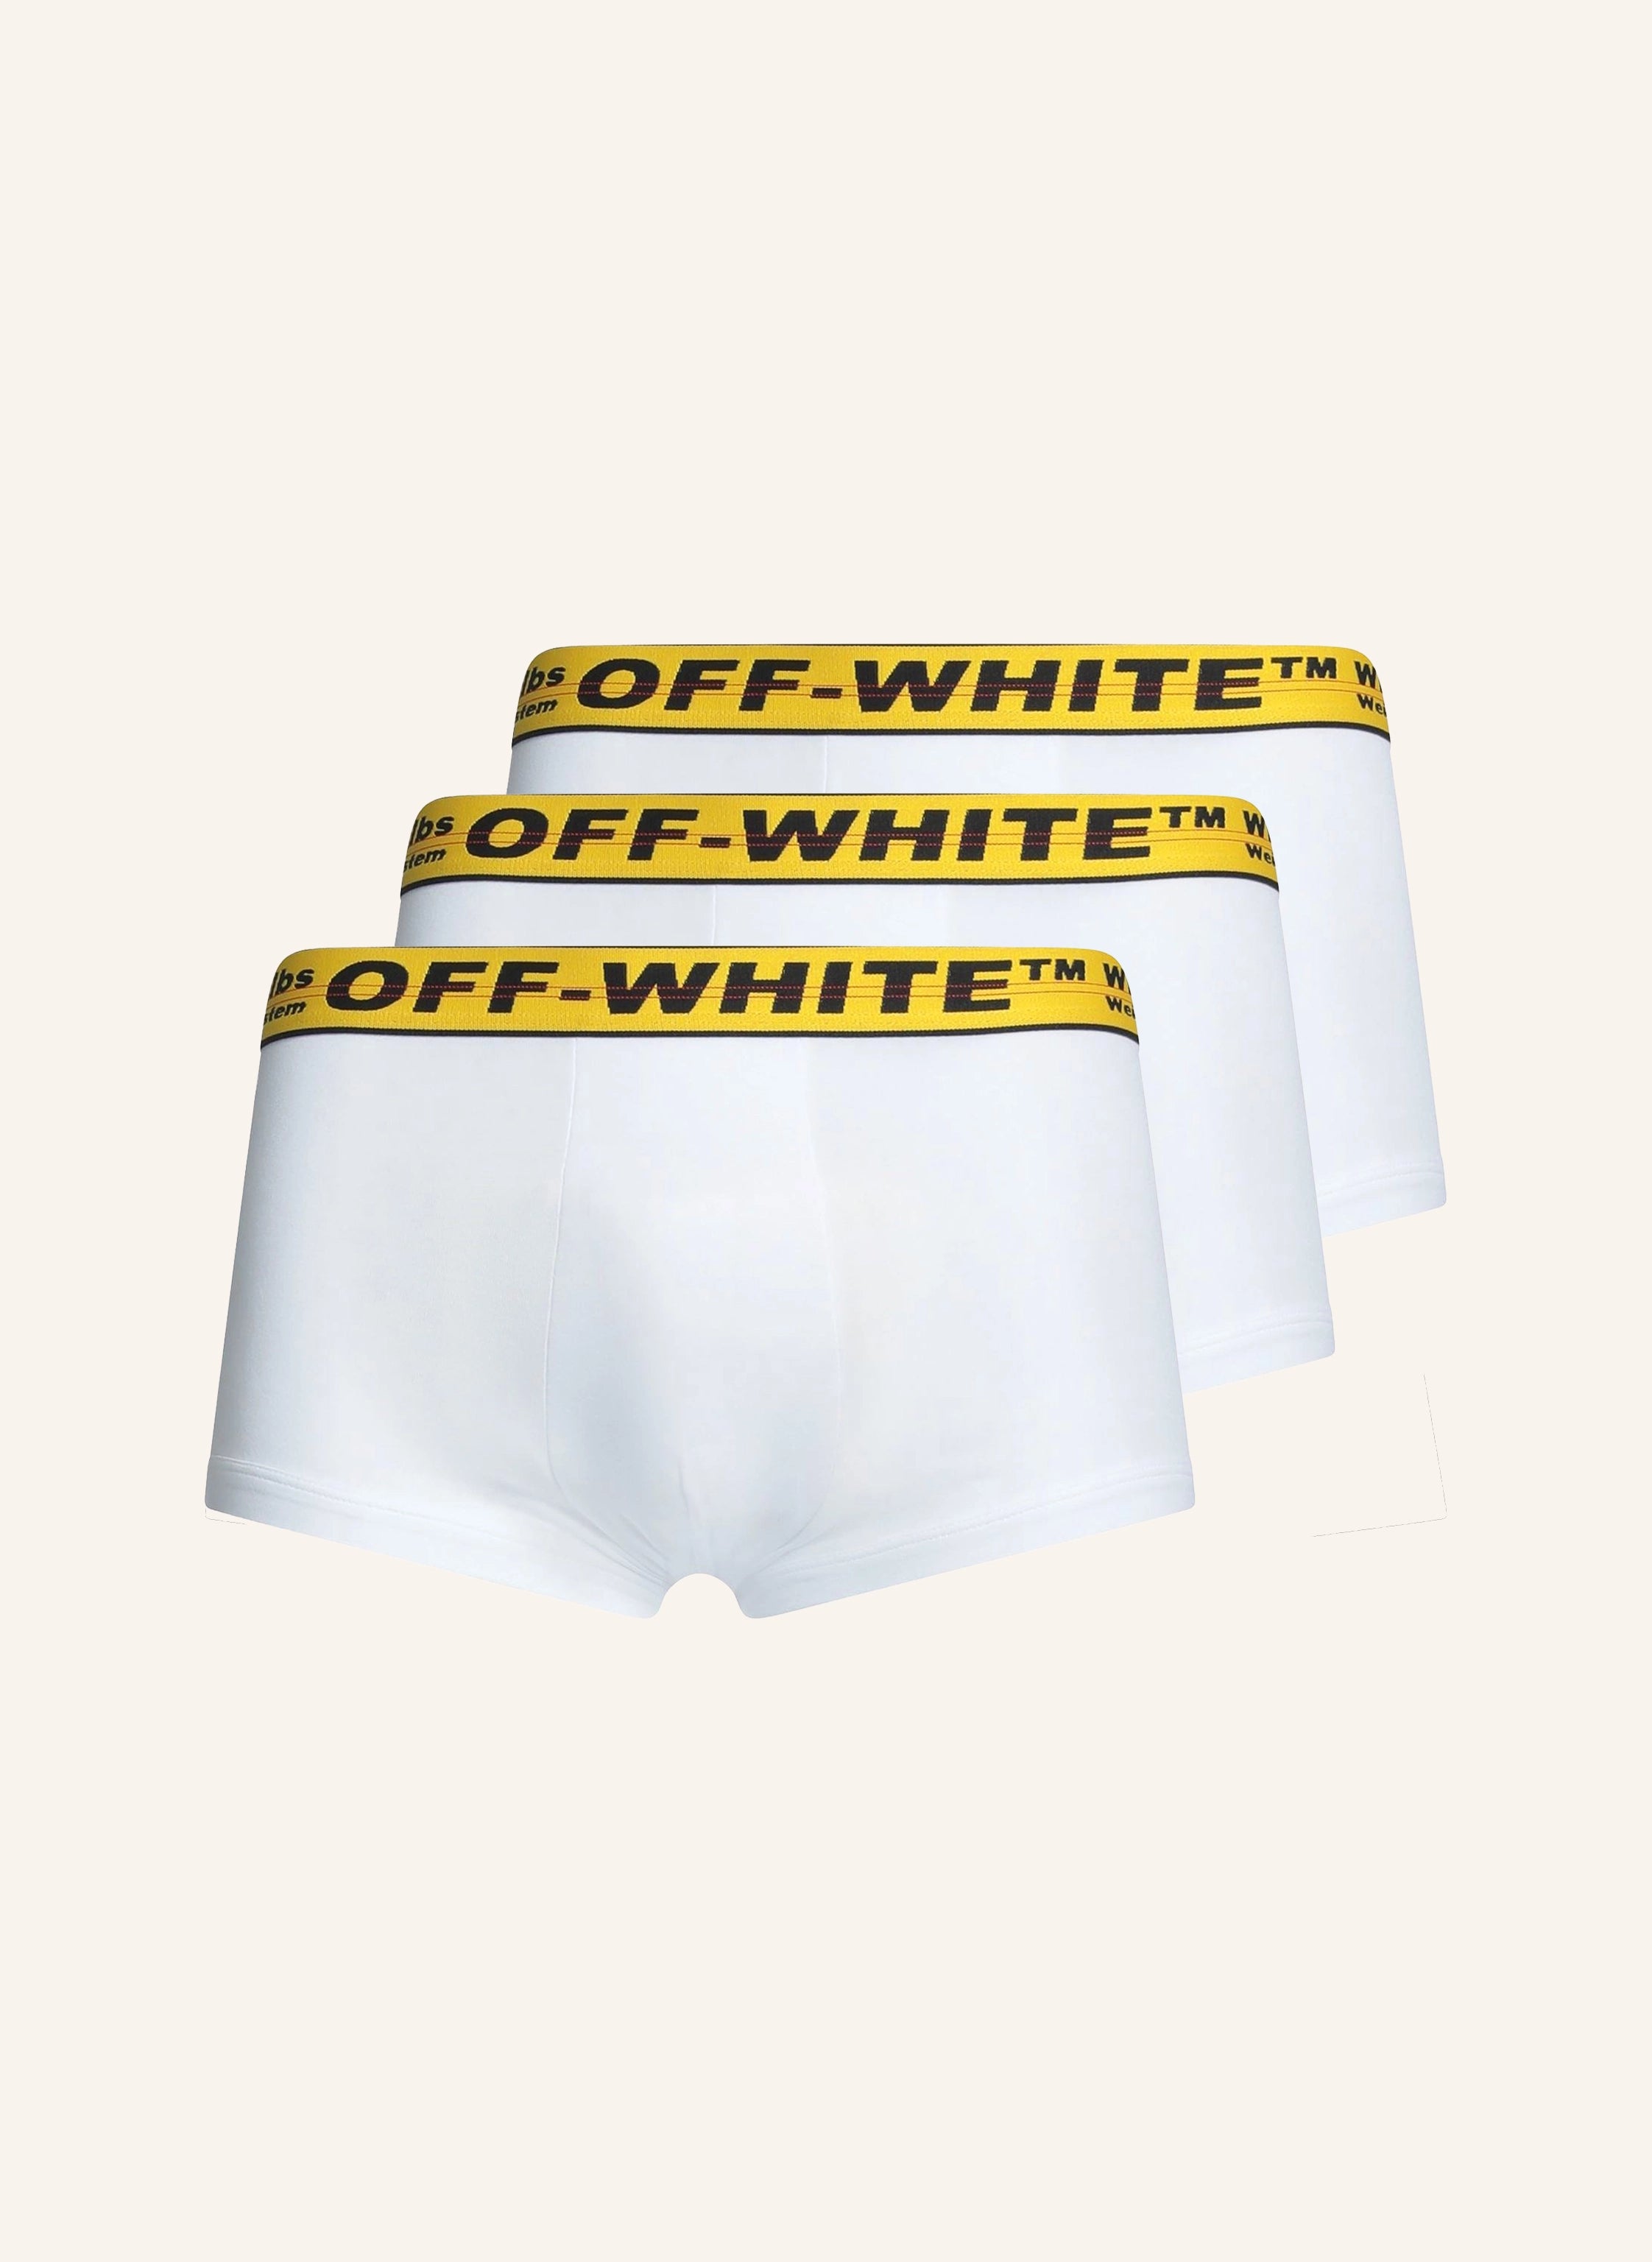 OFF-WHITE Boxershort Weiß (3er Pack)